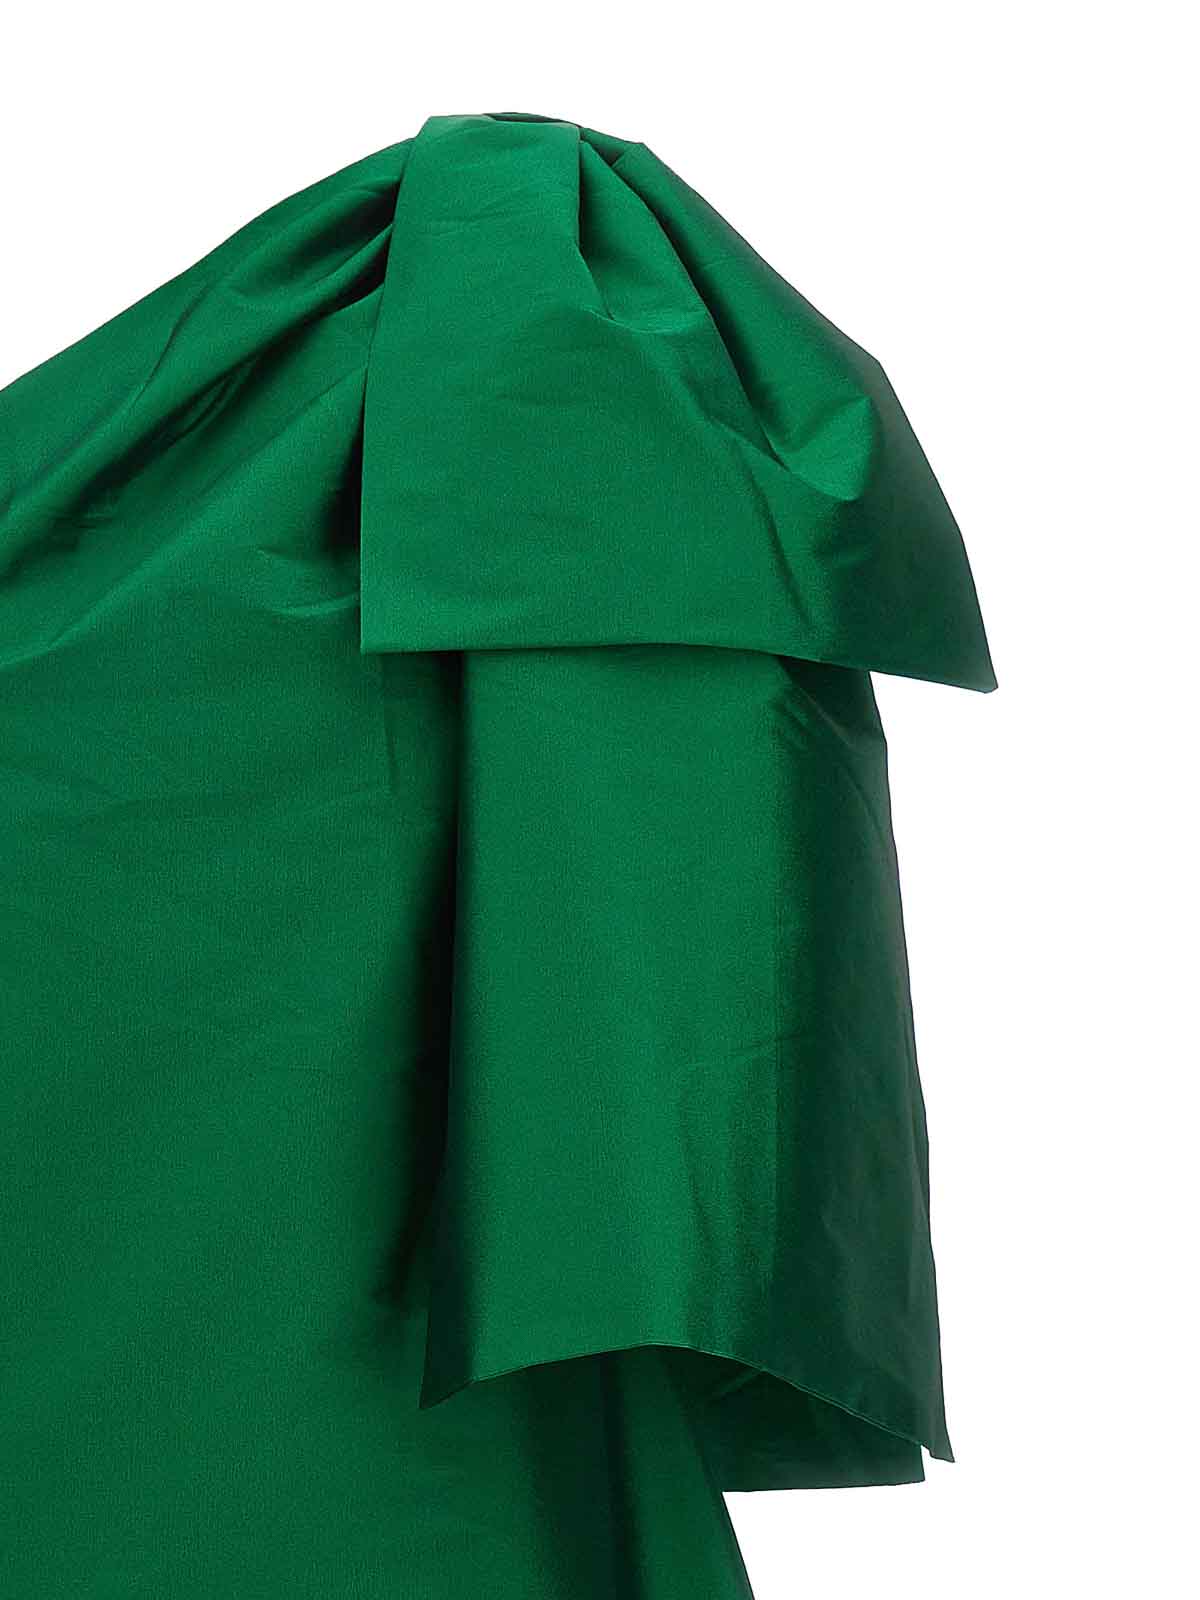 Shop Bernadette Vestido De Noche - Josselin In Green